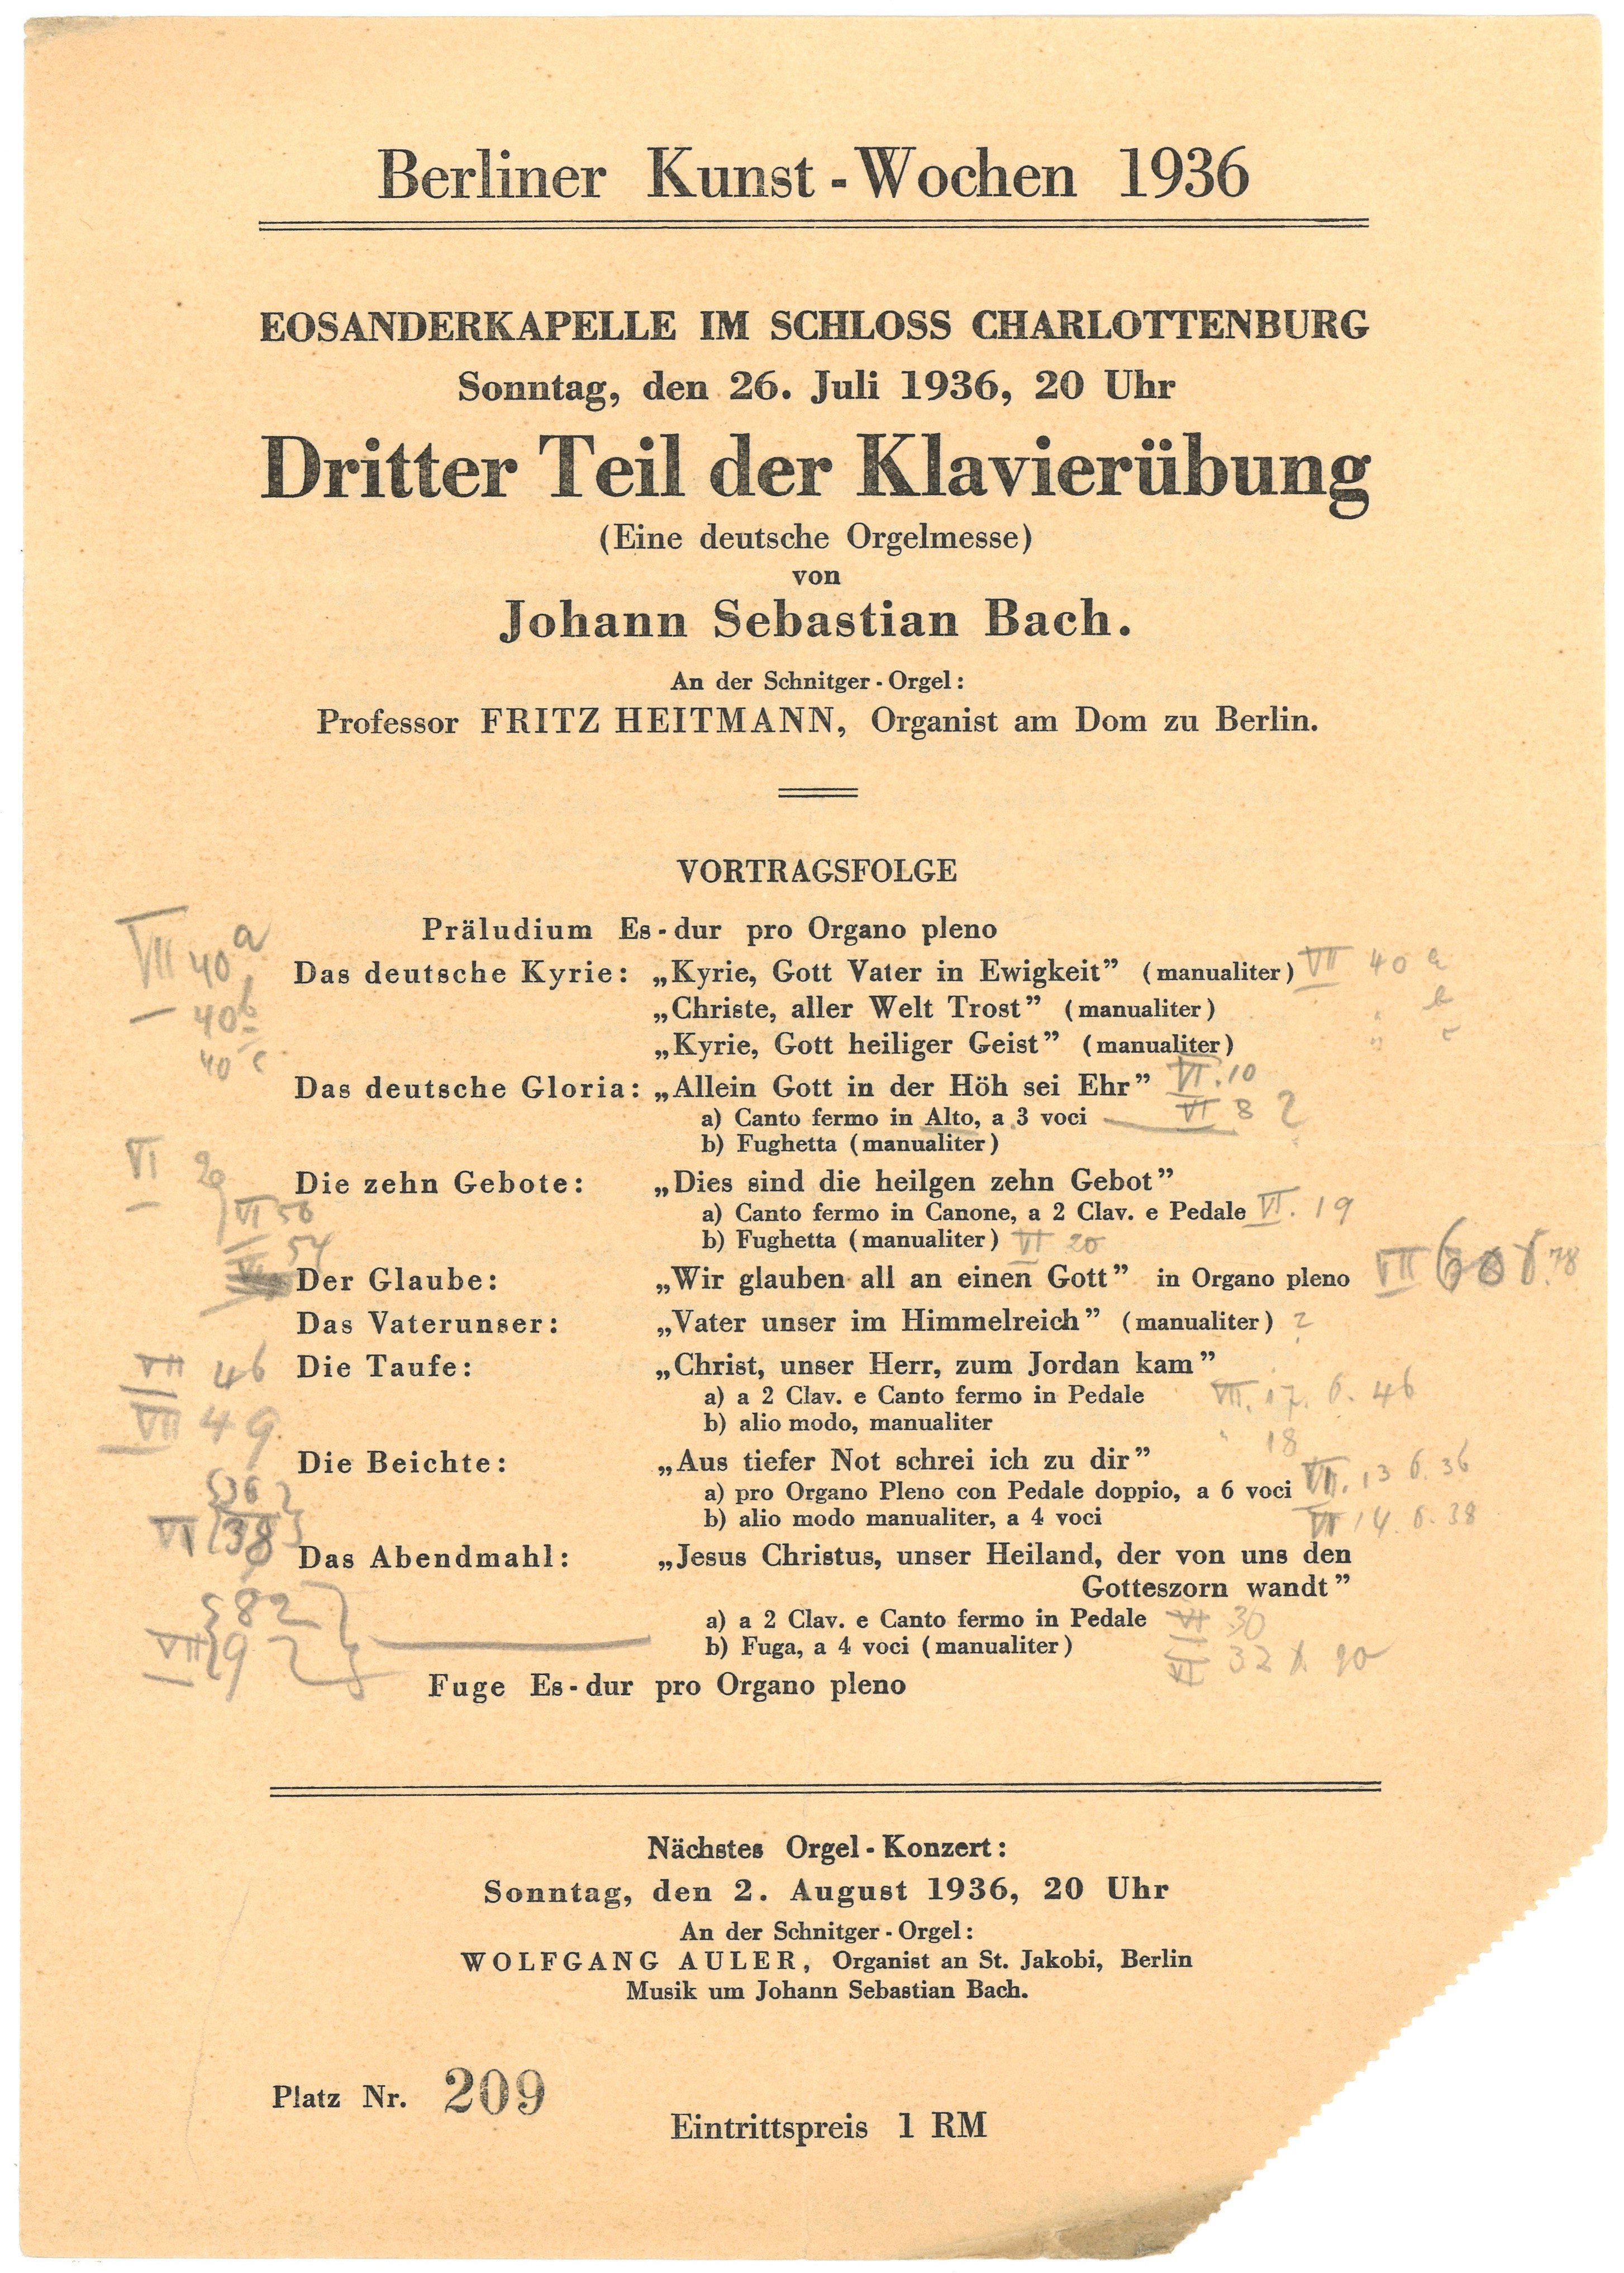 Programm zum Orgelkonzert in der Eosanderkapelle des Schlosses Charlottenburg am 26. Juli 1936 (Landesgeschichtliche Vereinigung für die Mark Brandenburg e.V., Archiv CC BY)